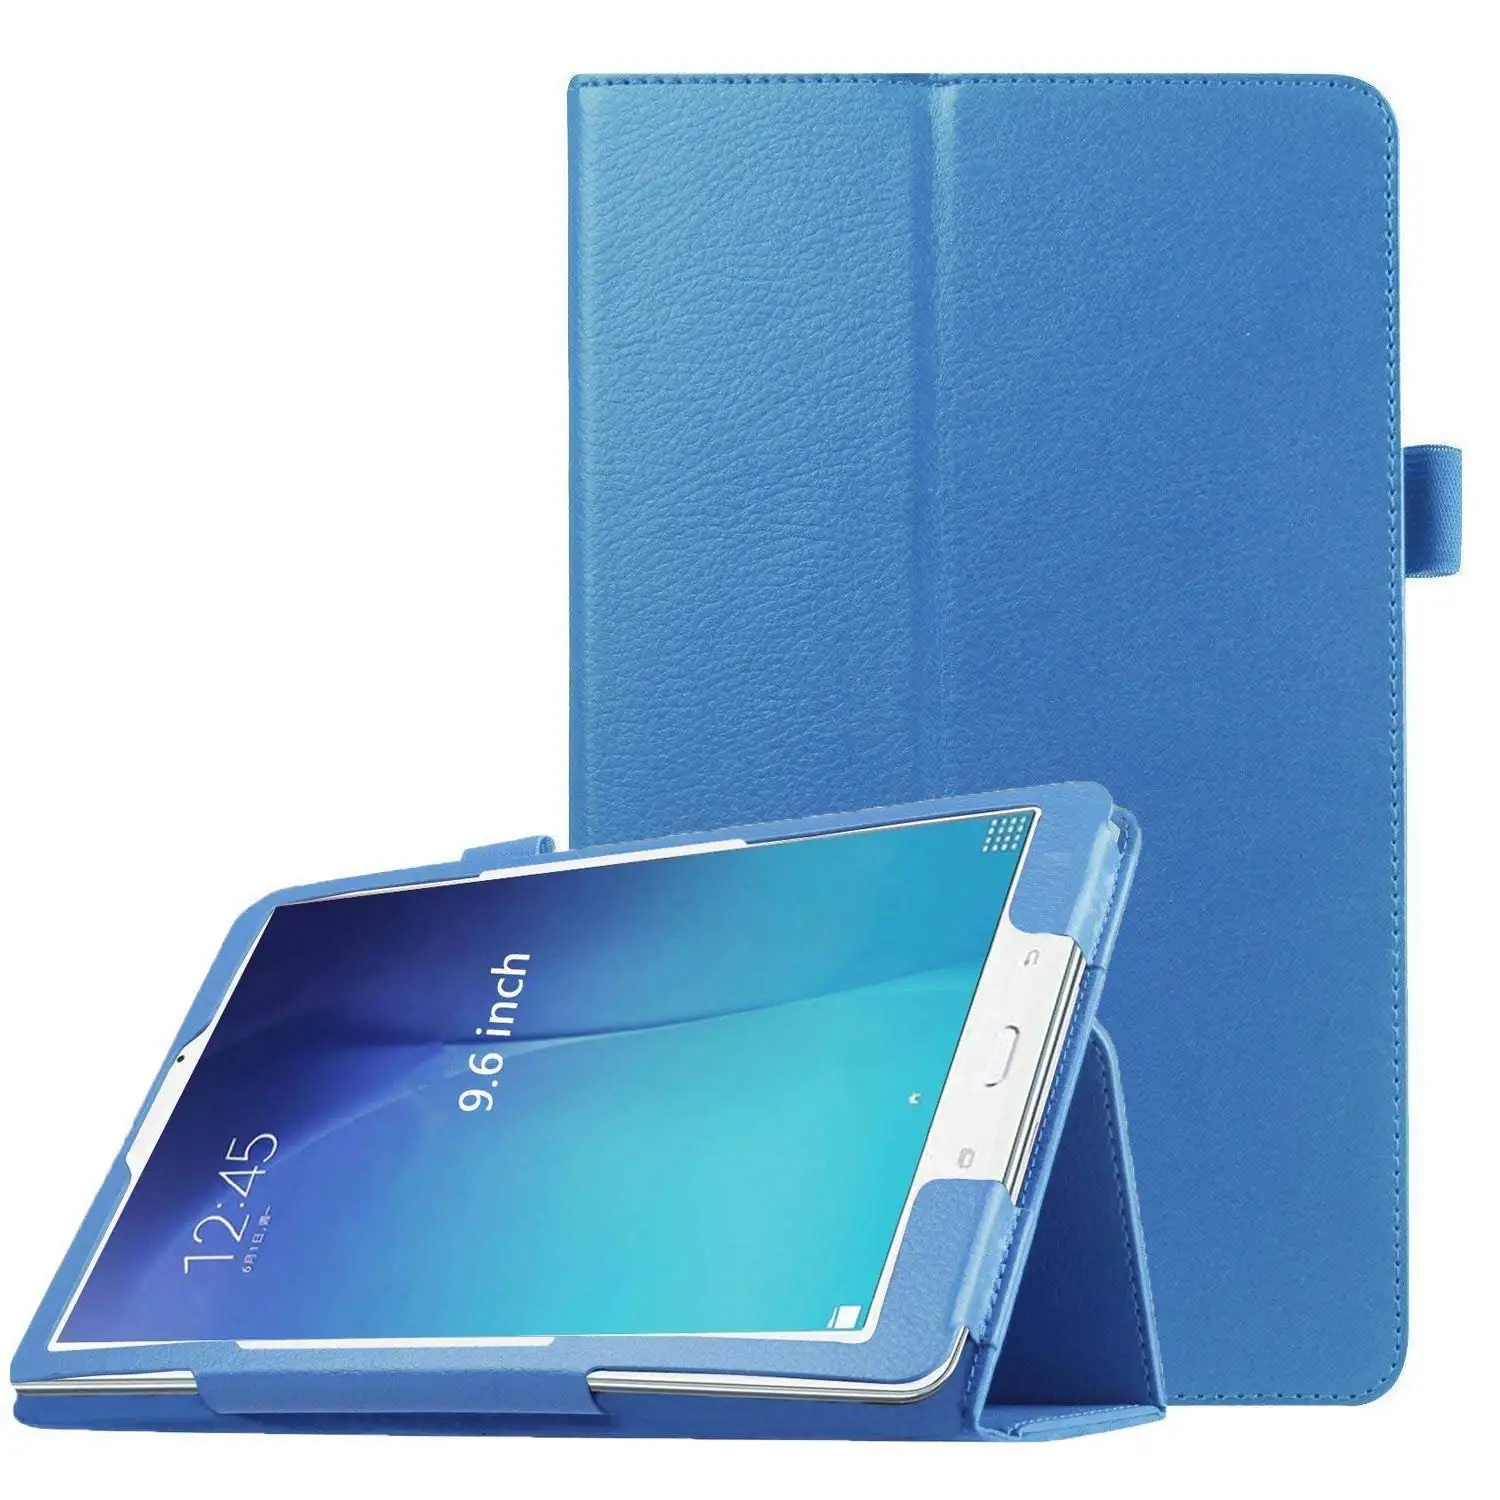 Чехол КРЫШКА ДЛЯ samsung Galaxy Tab E 9," T560 Смарт из искусственной кожи чехол-книжка раскладной стенд держатель пера SM-T561 SM-T567 T560 funda - Цвет: T560 T561 blue